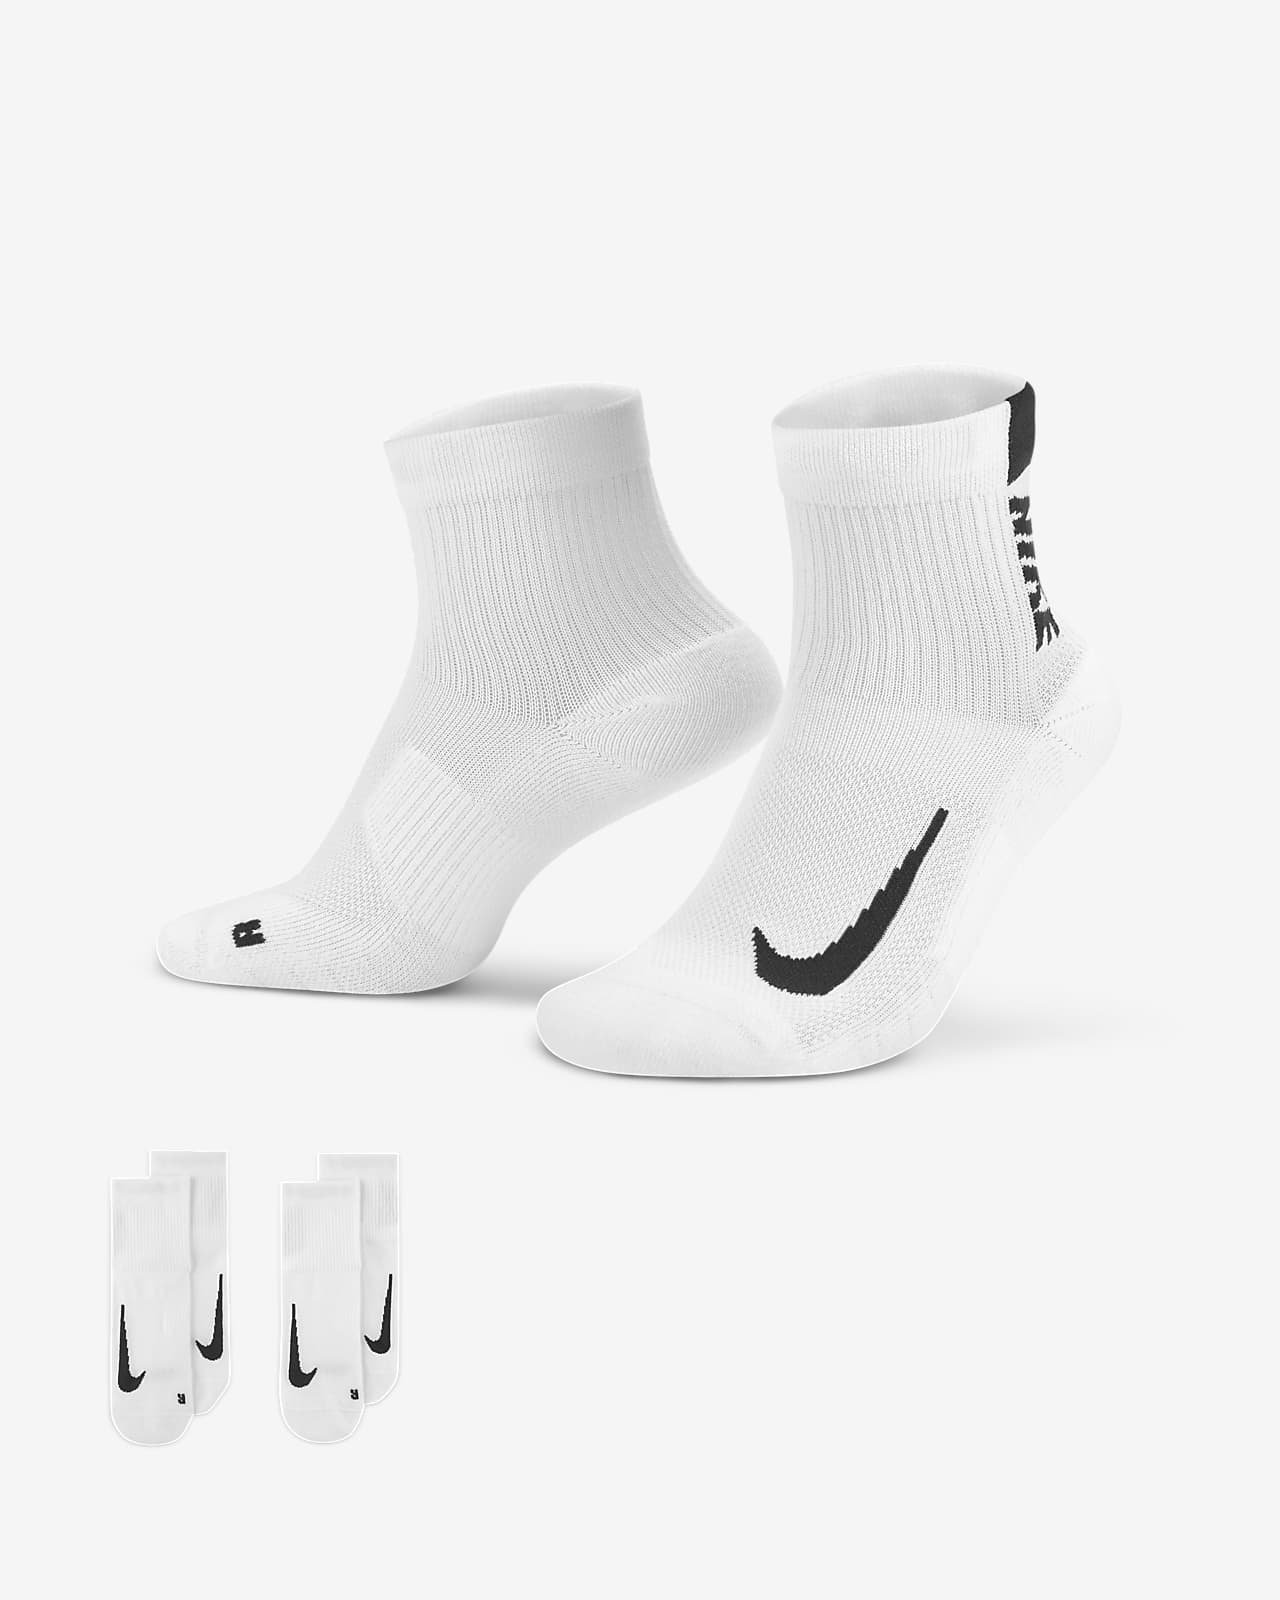 Nike Multiplier Running Ankle Socks (2 Pair).